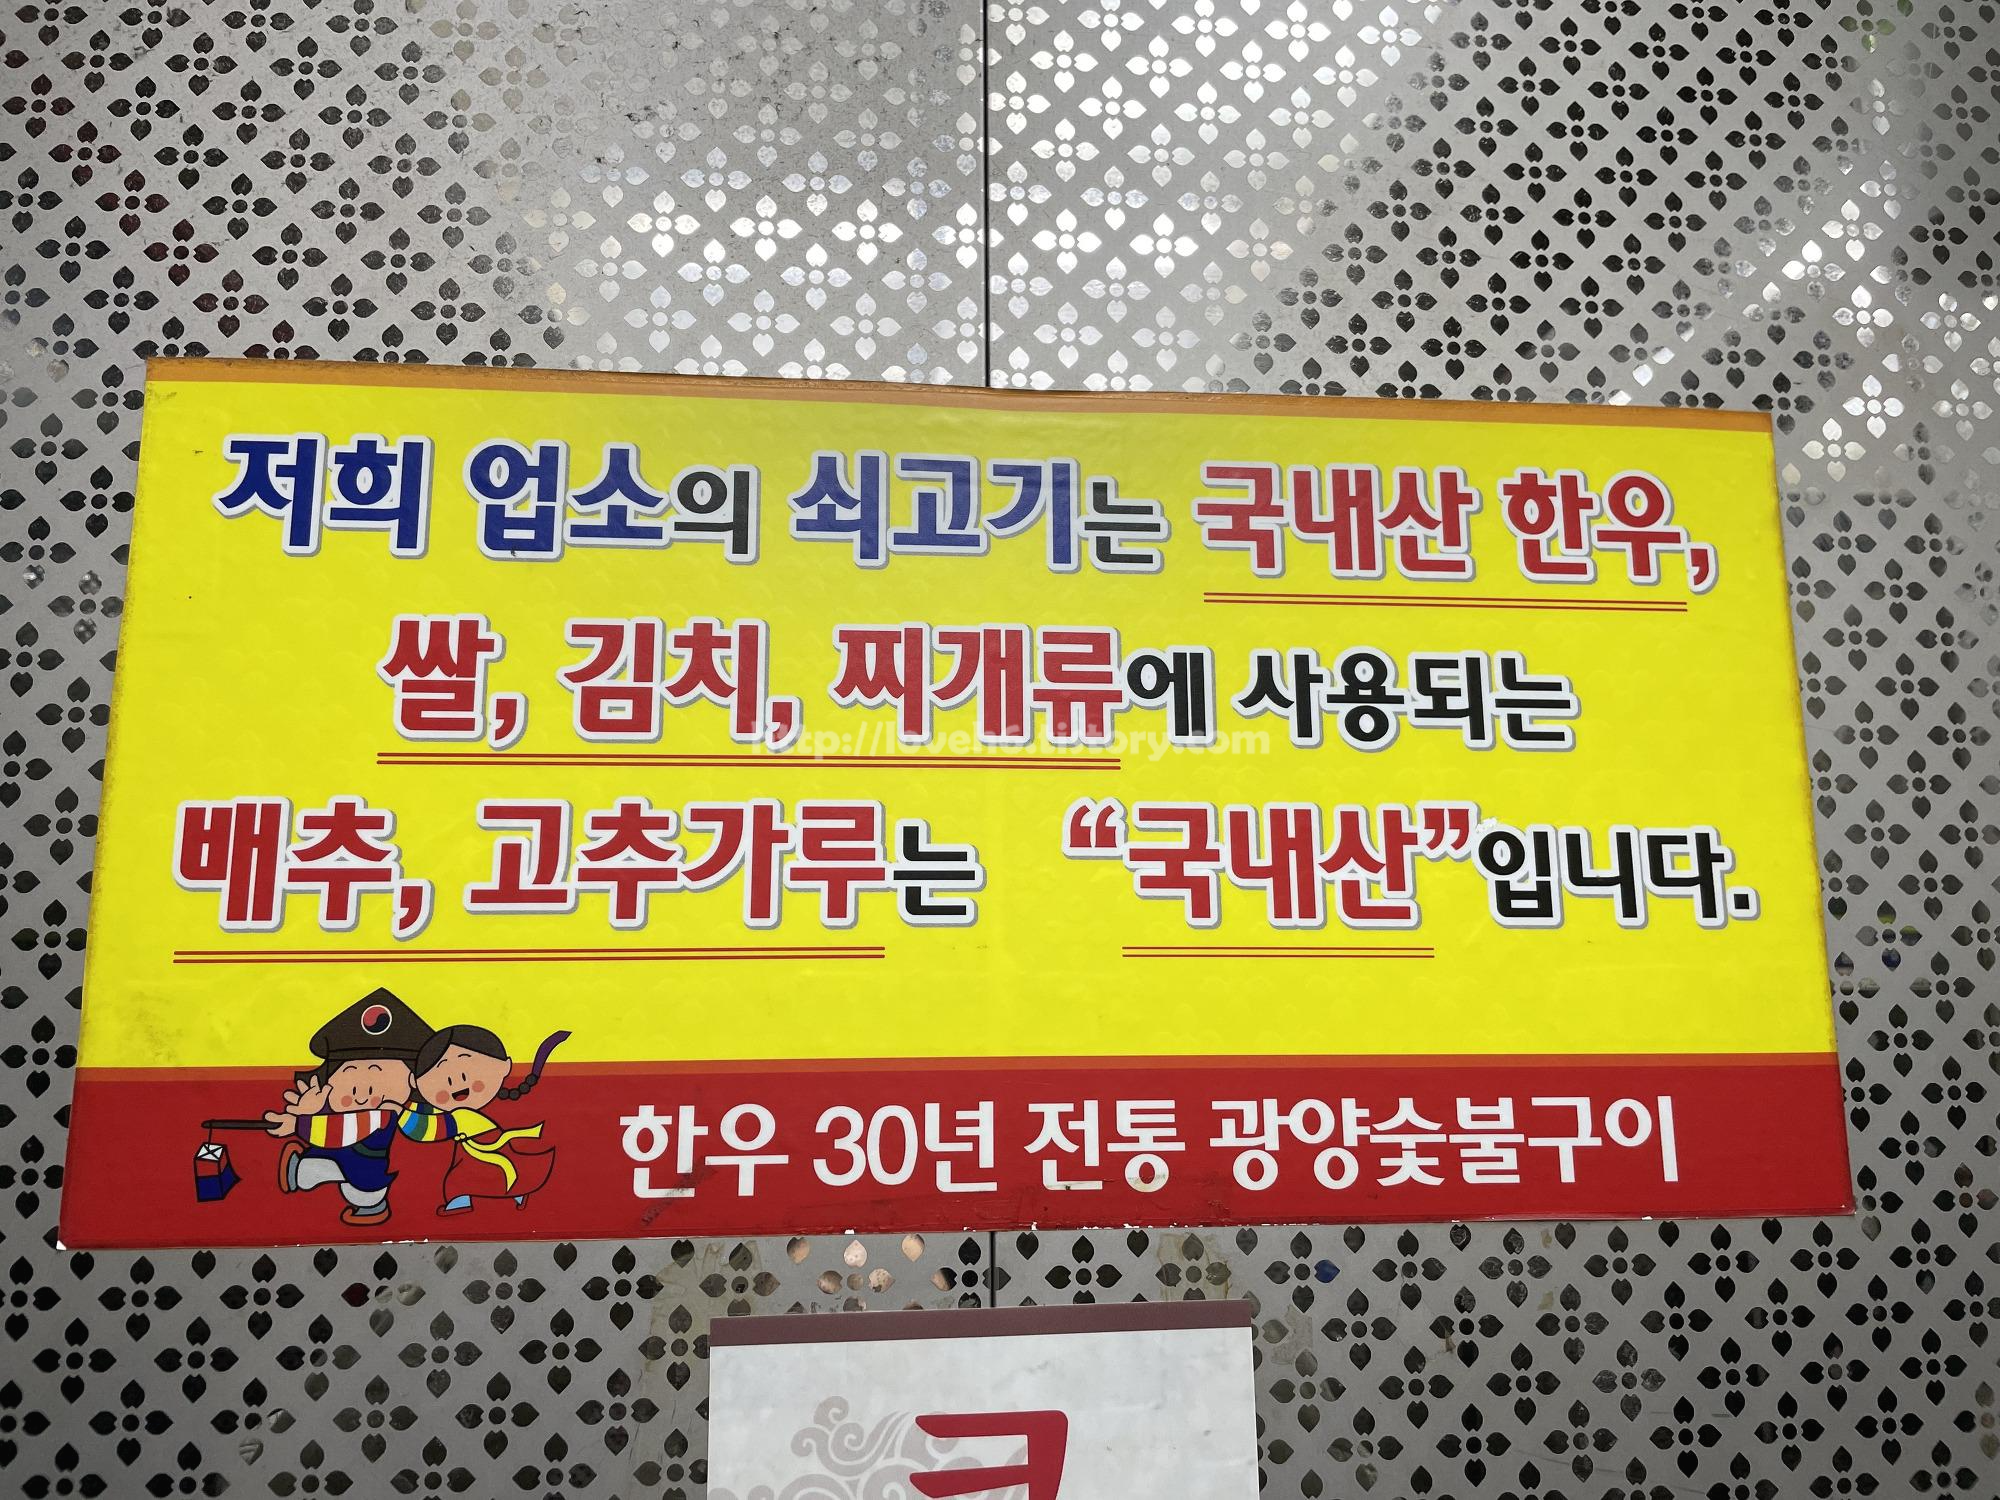 광양숯불구이 상무본점/Gwangyang Charcoal Grilled Sangmu Main Branch/원산지 참고하세요

소고기

쌀

김치

찌개류

배추

고춧가루

국내산입니다